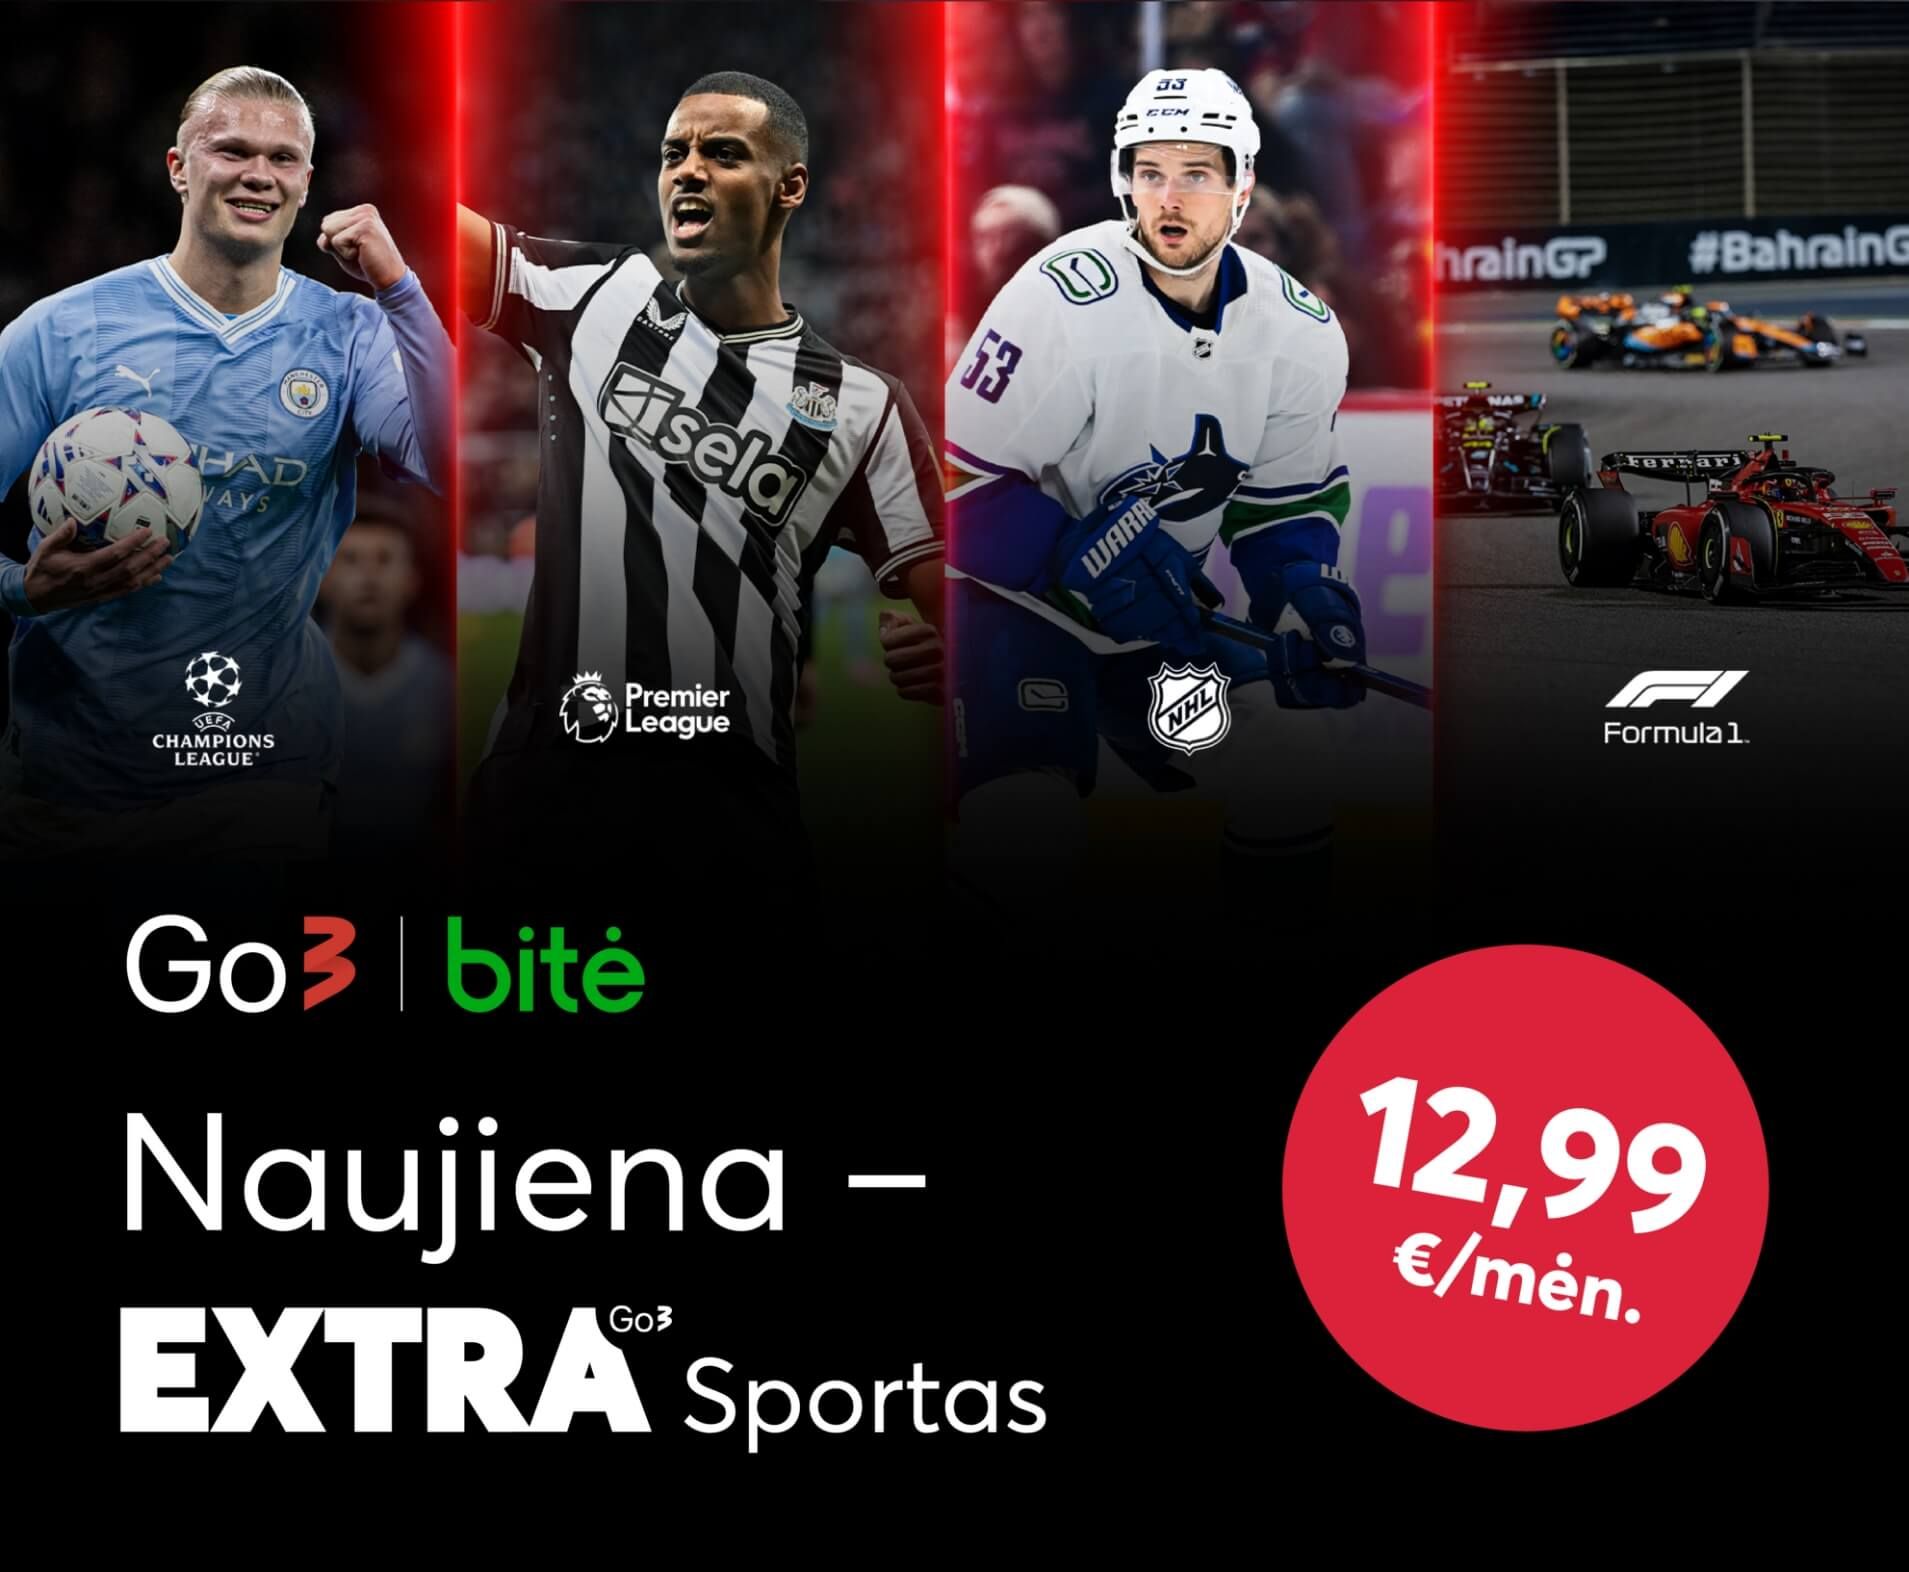 Naujiena - EXTRA sporto paketas už 12,99 eur. per mėnesį.